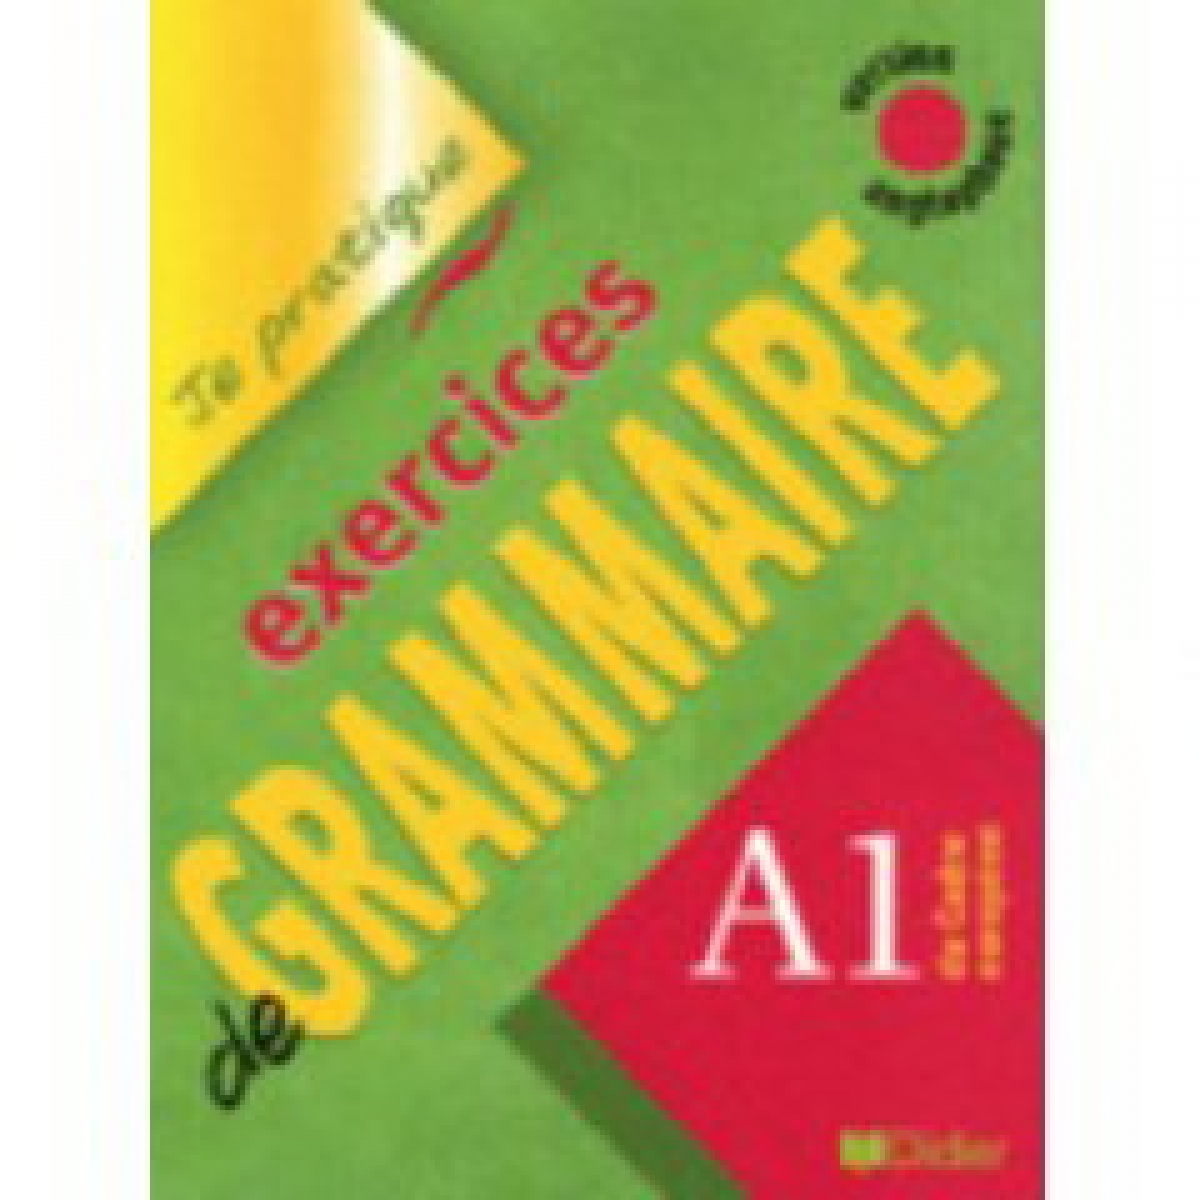 C B. Exercices De Grammaire Niveau A1 Version Anglophone Livre 